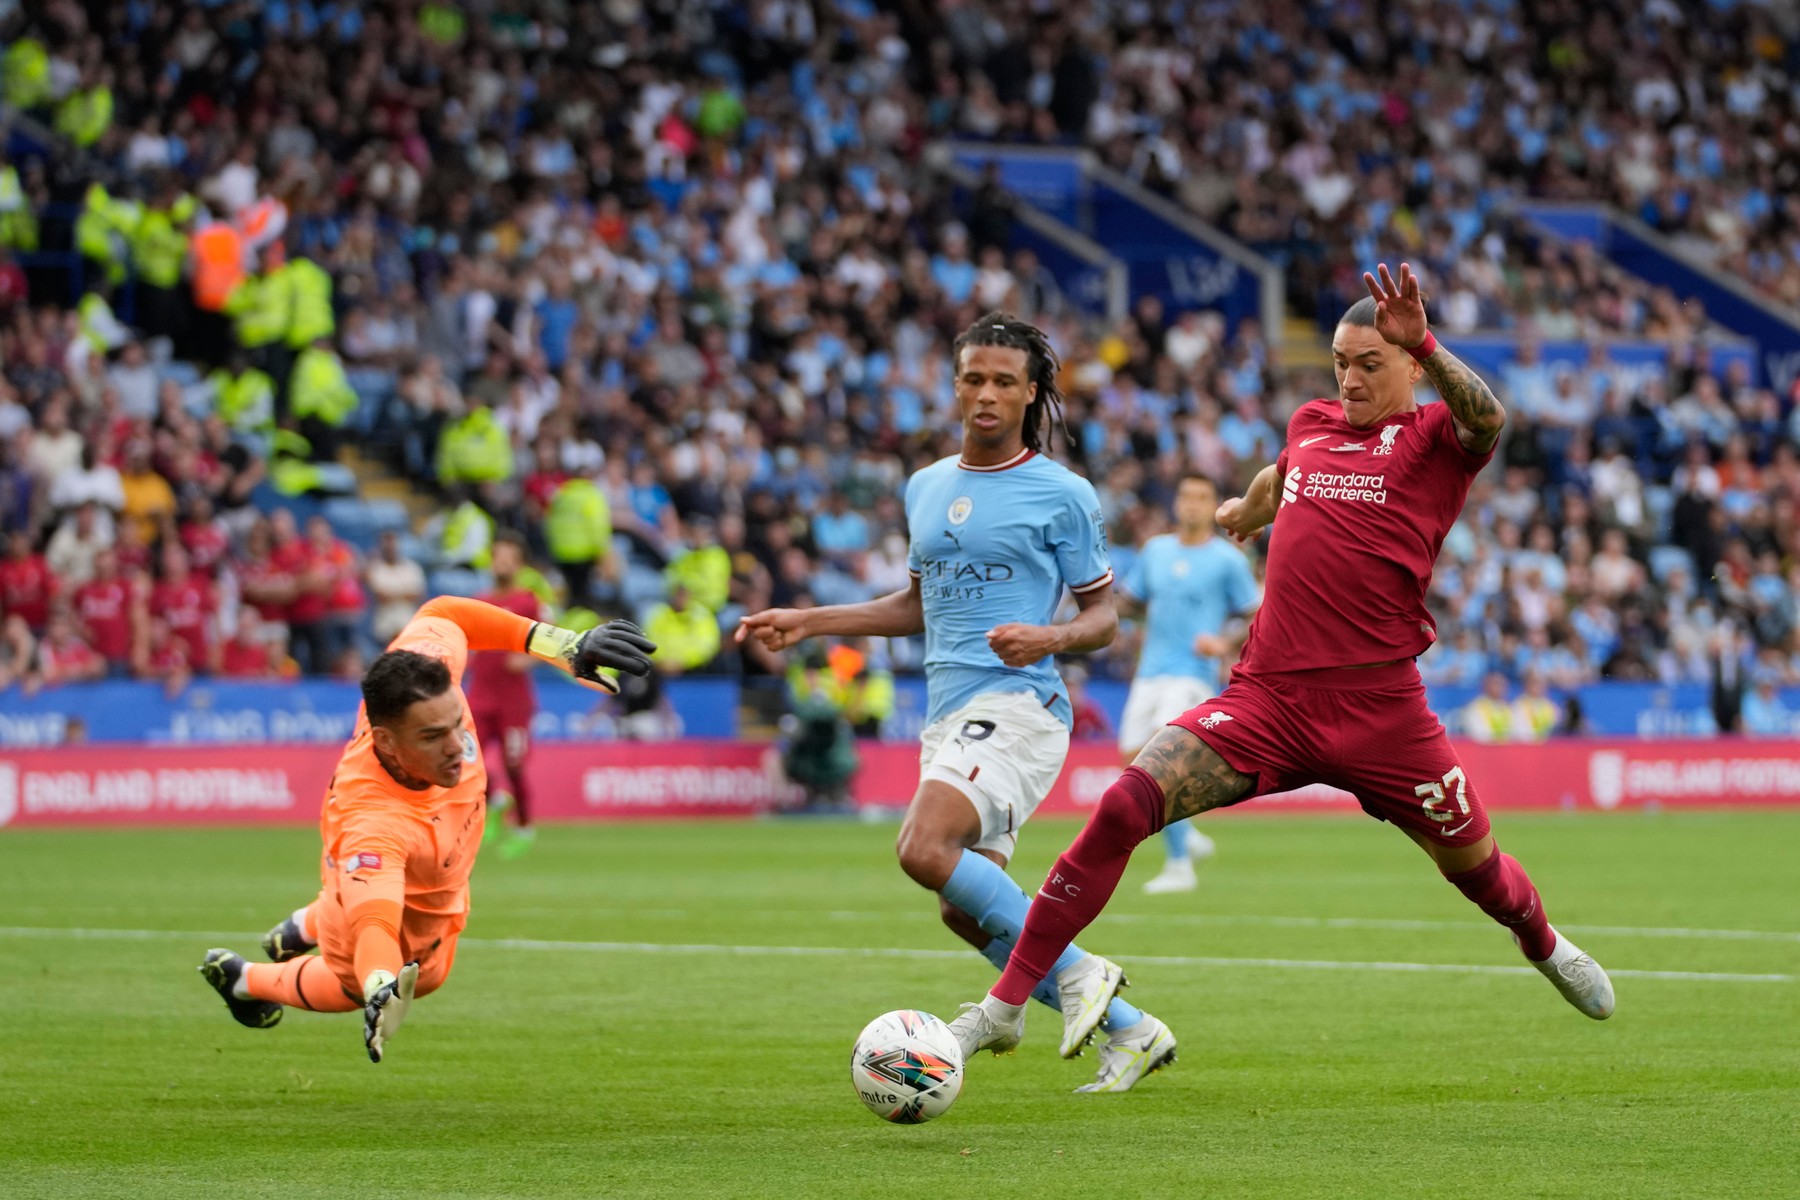 Liverpool - Manchester City 3-1, în Supercupa Angliei. Darwin Nunez, impact rapid pentru “cormorani”